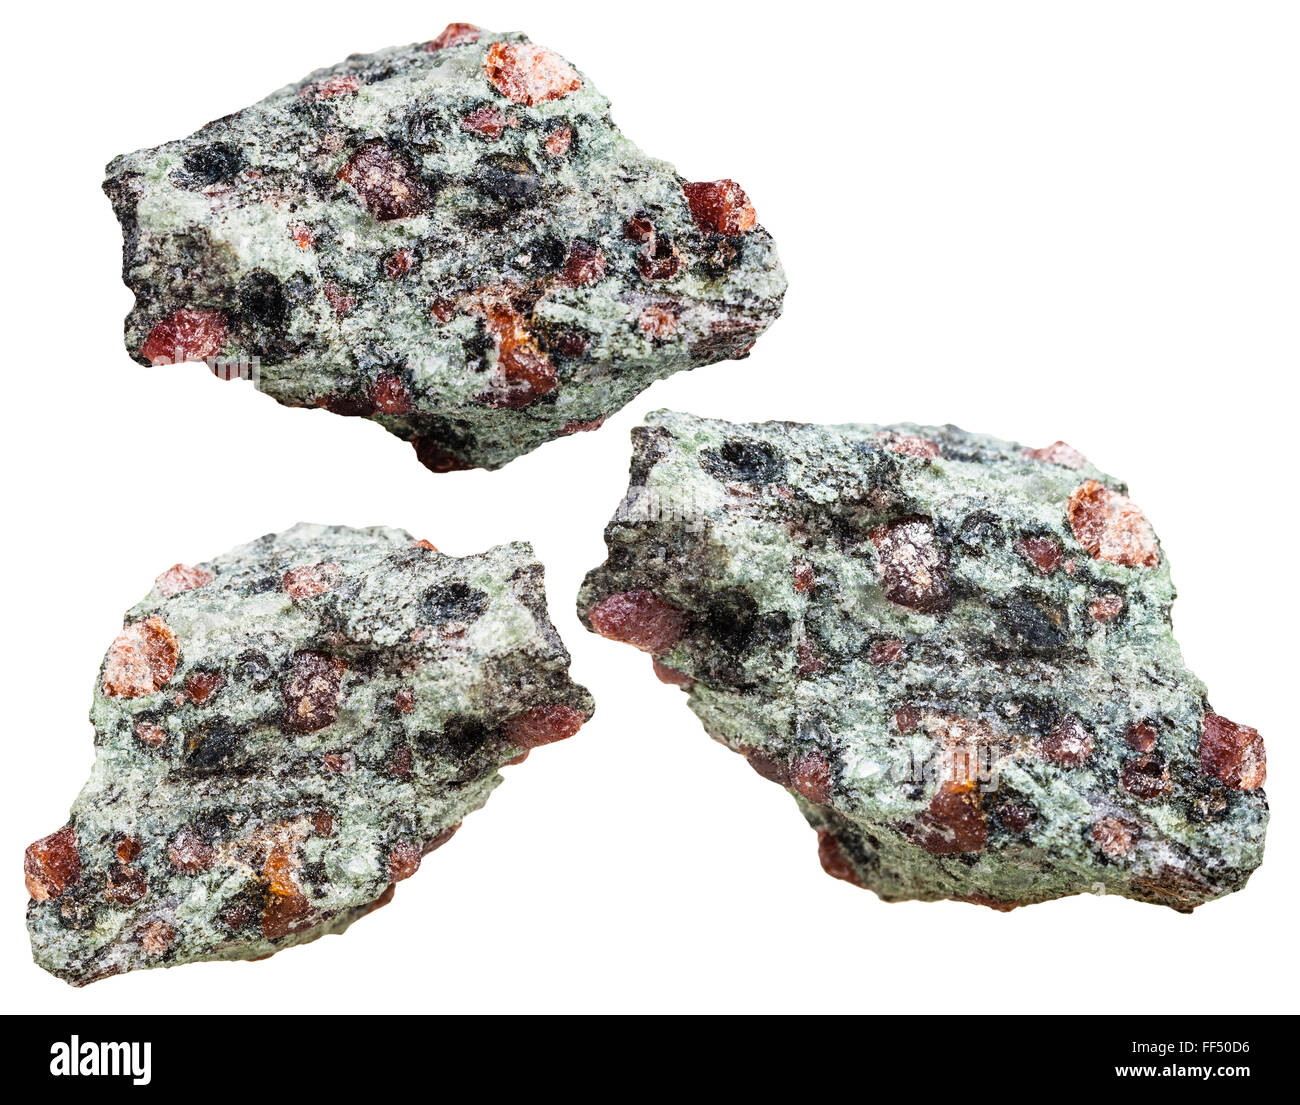 Makroaufnahmen von mineralischen Naturstein - drei Stücke von Eklogit aus Granat (rot) und Omphazit (grau-grün) Groundm Felsen Stockfoto